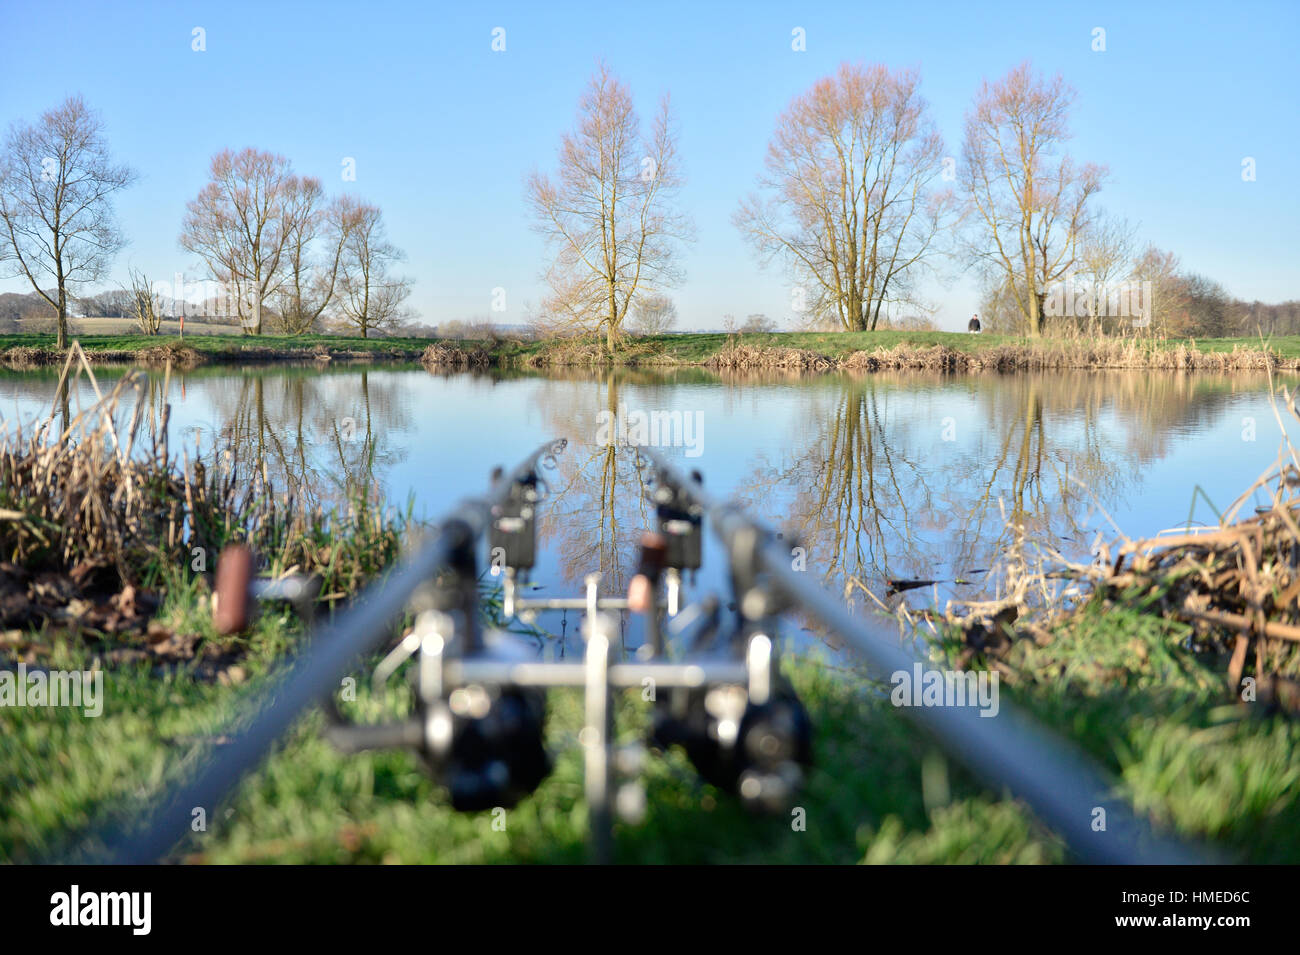 La pesca alla carpa (aste) presso un lago per la pesca sportiva con una bella riflessione Foto Stock